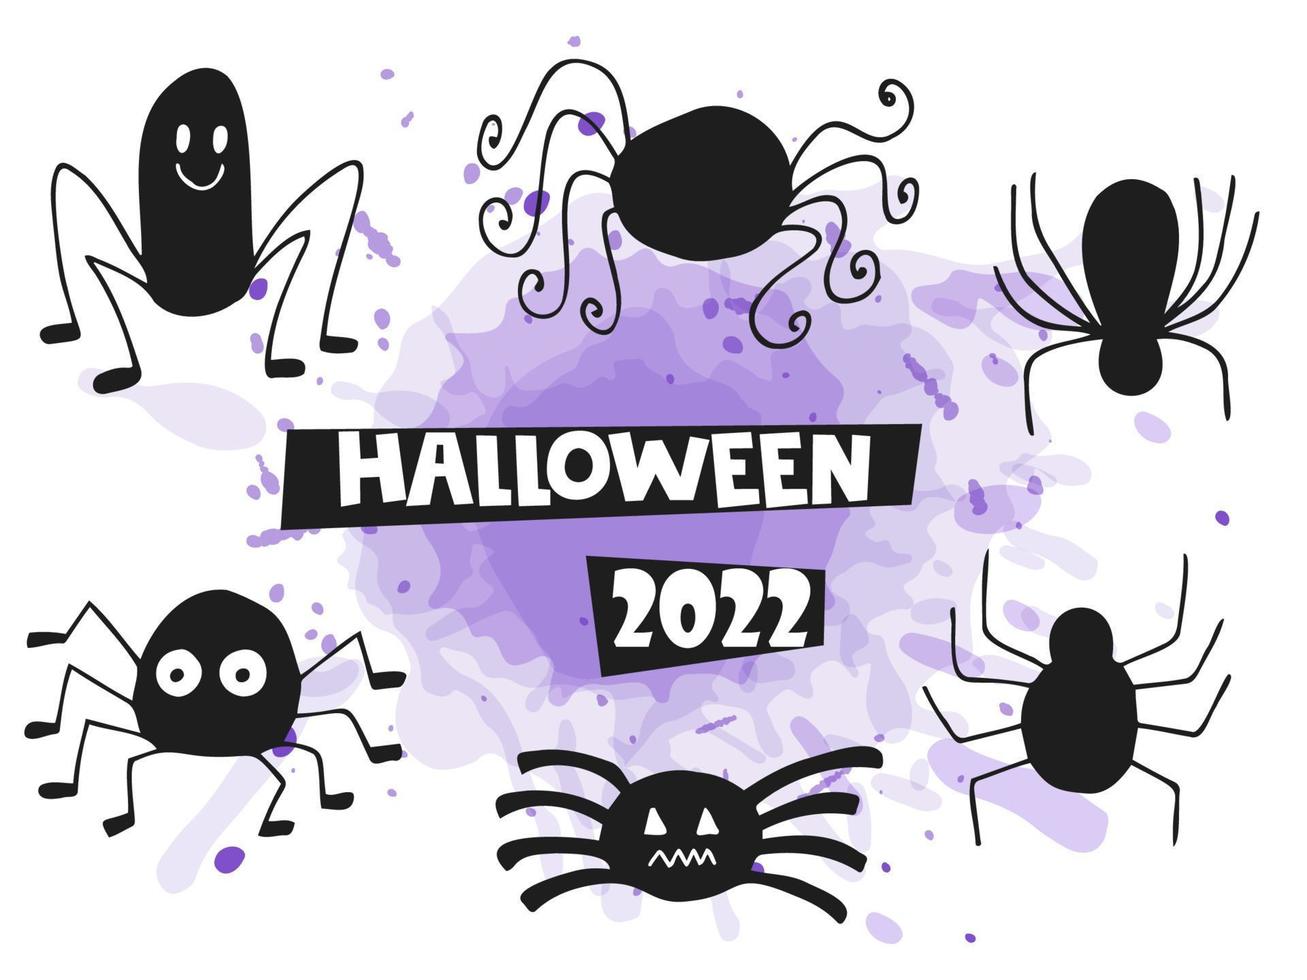 halloween 2022 - 31. oktober. ein traditioneller feiertag. Süßes oder Saures. vektorillustration im handgezeichneten gekritzelstil. Reihe von Silhouetten süßer Spinnen mit einem violetten Aquarellfleck. vektor